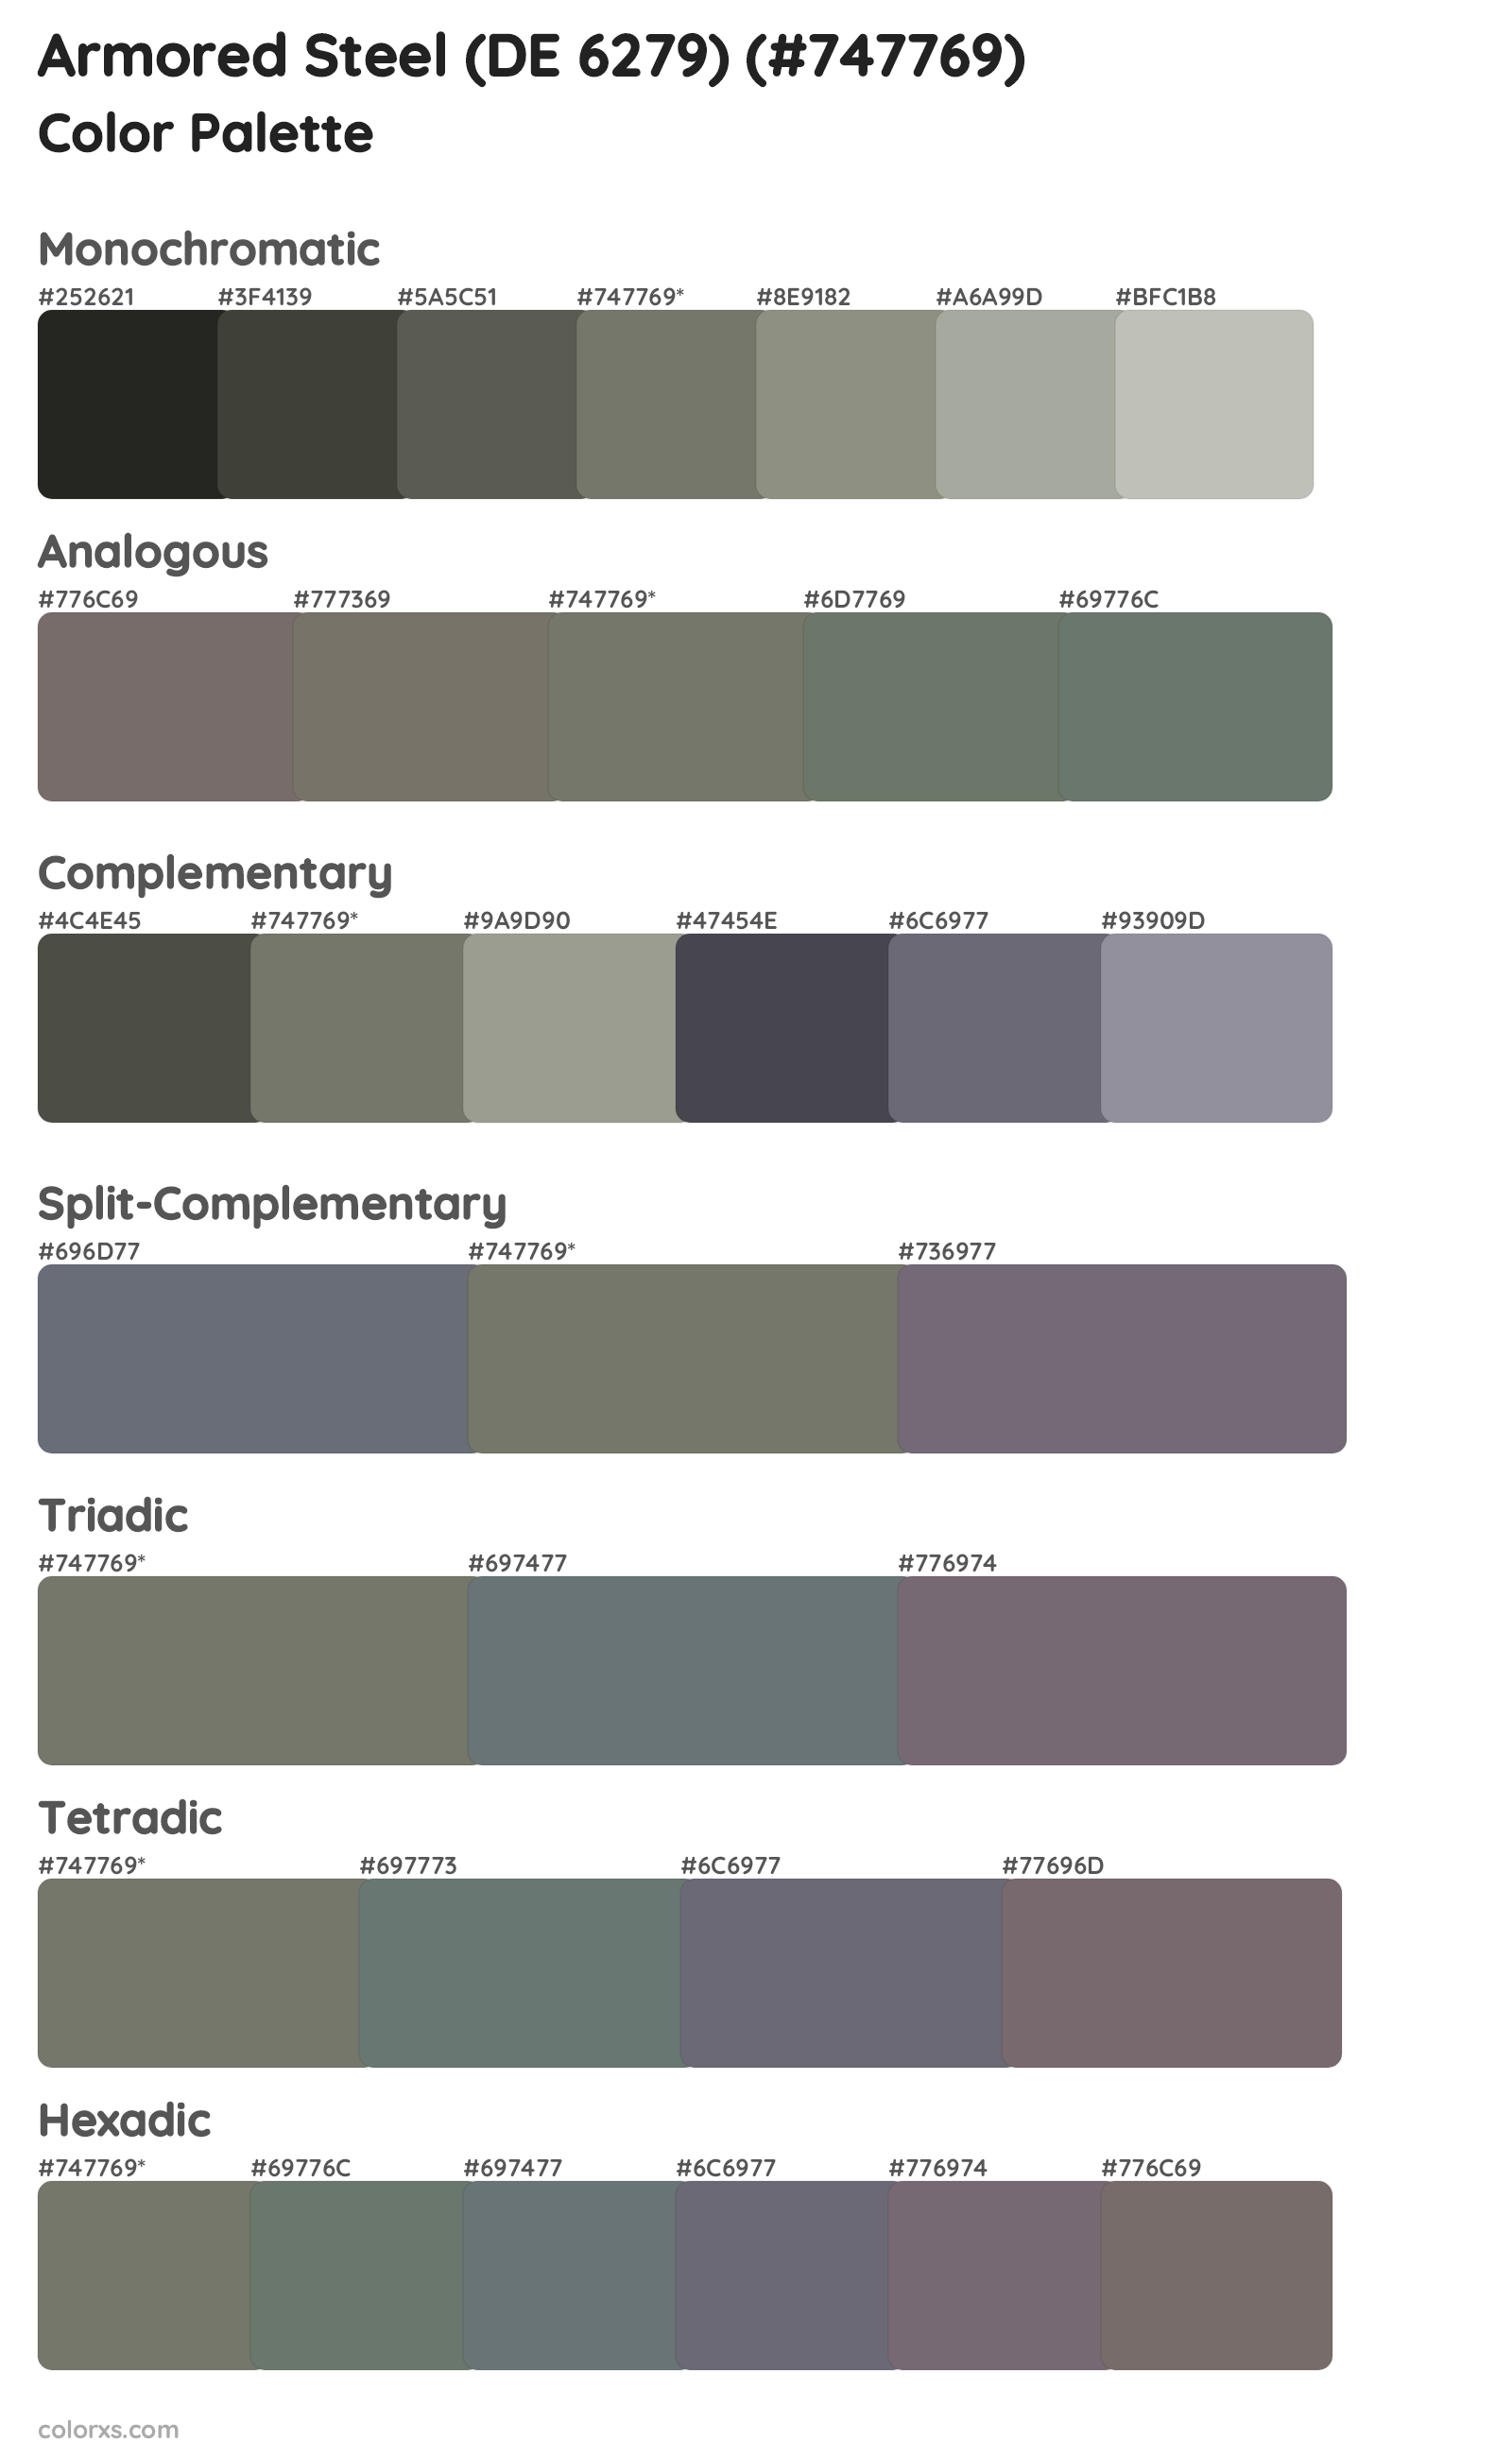 Armored Steel (DE 6279) Color Scheme Palettes